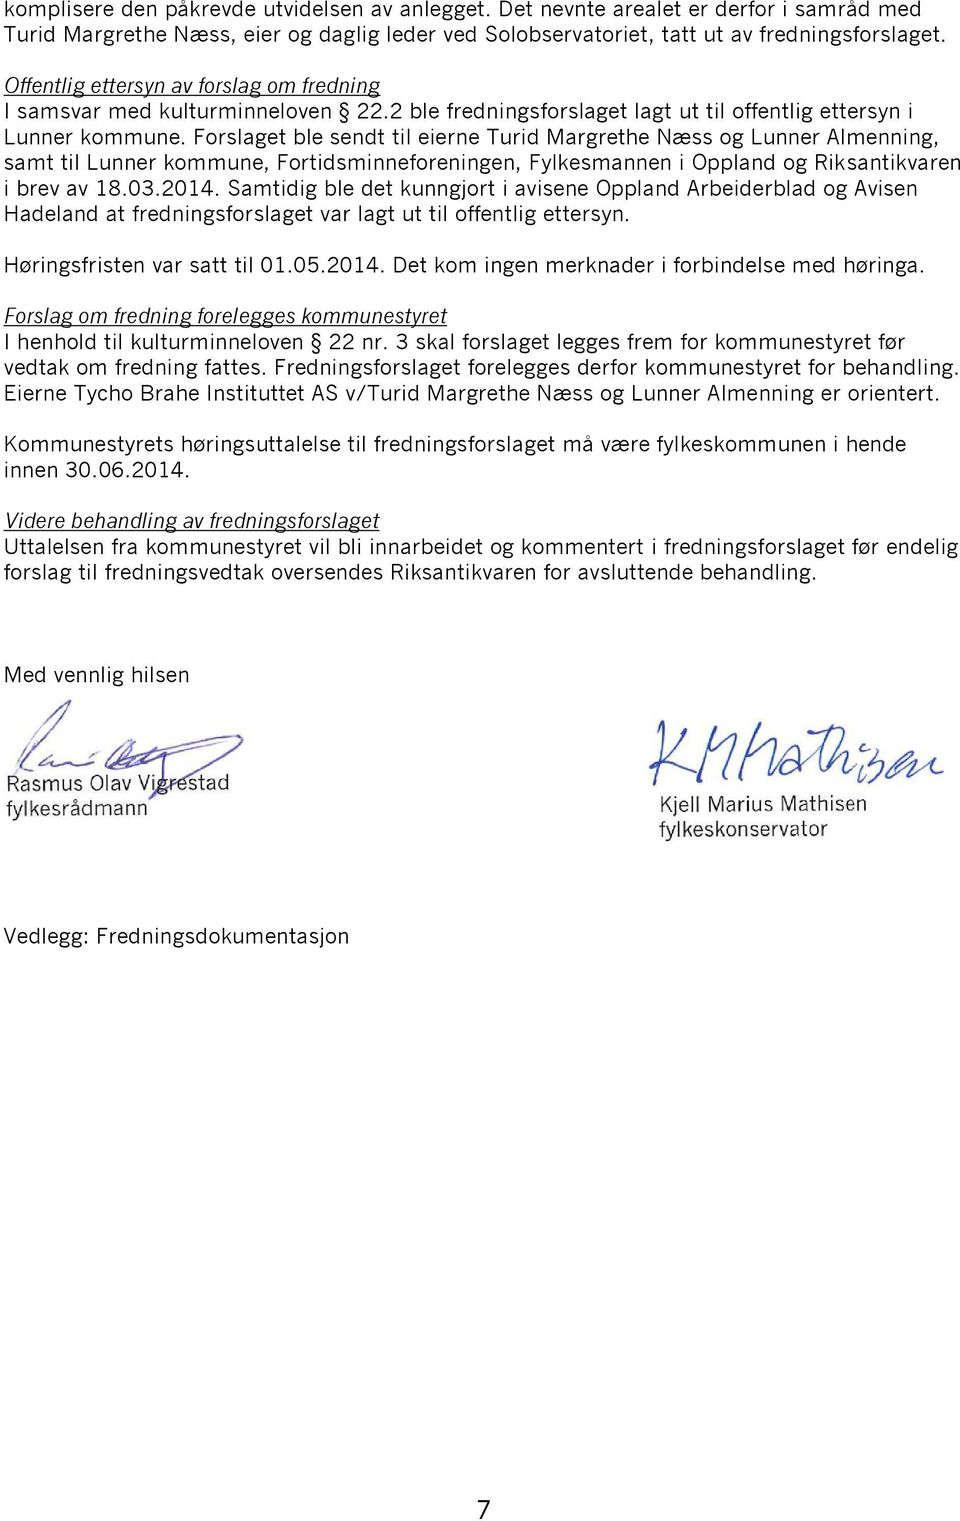 Forslaget ble sendt til eierne Turid Margrethe Næss og Lunner Almenning, samt til Lunner kommune, Fortidsminneforeningen, Fylkesmannen i Oppland og Riksantikvaren i brev av 18.03.2014.